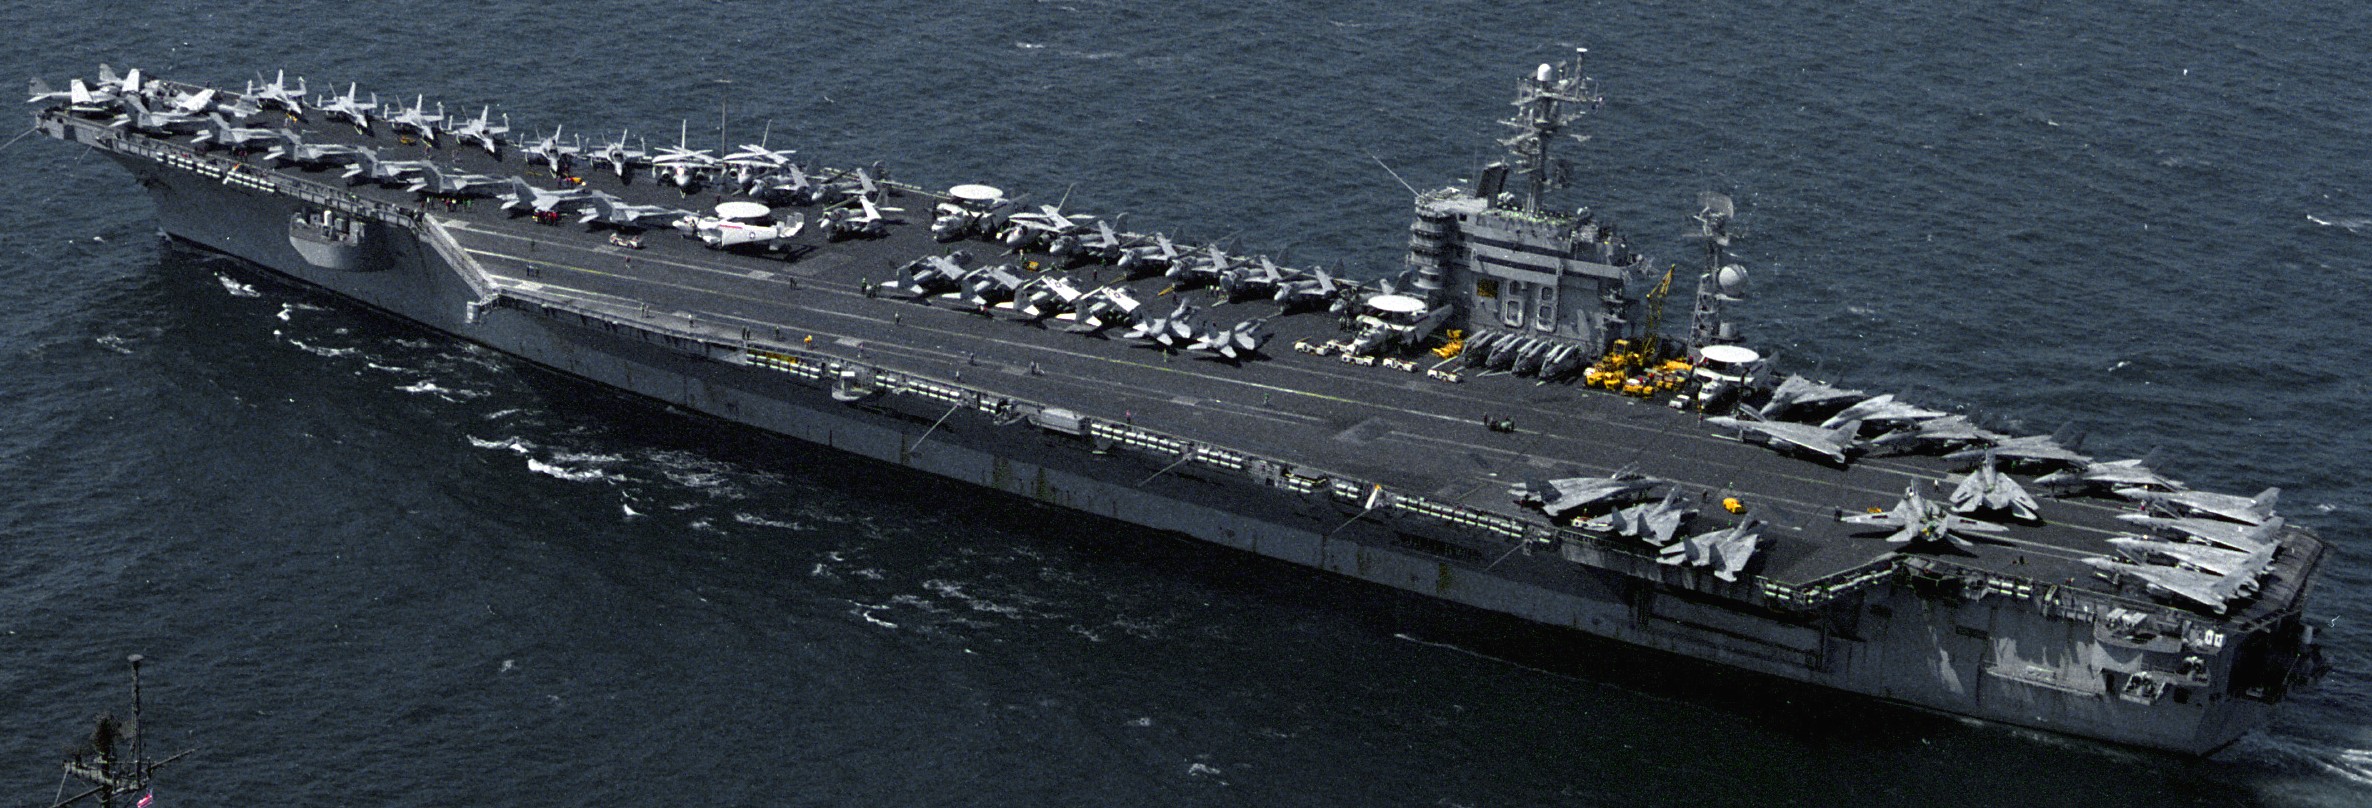 cvn-68 uss nimitz aircraft carrier air wing cvw-9 us navy southern watch 1993 63